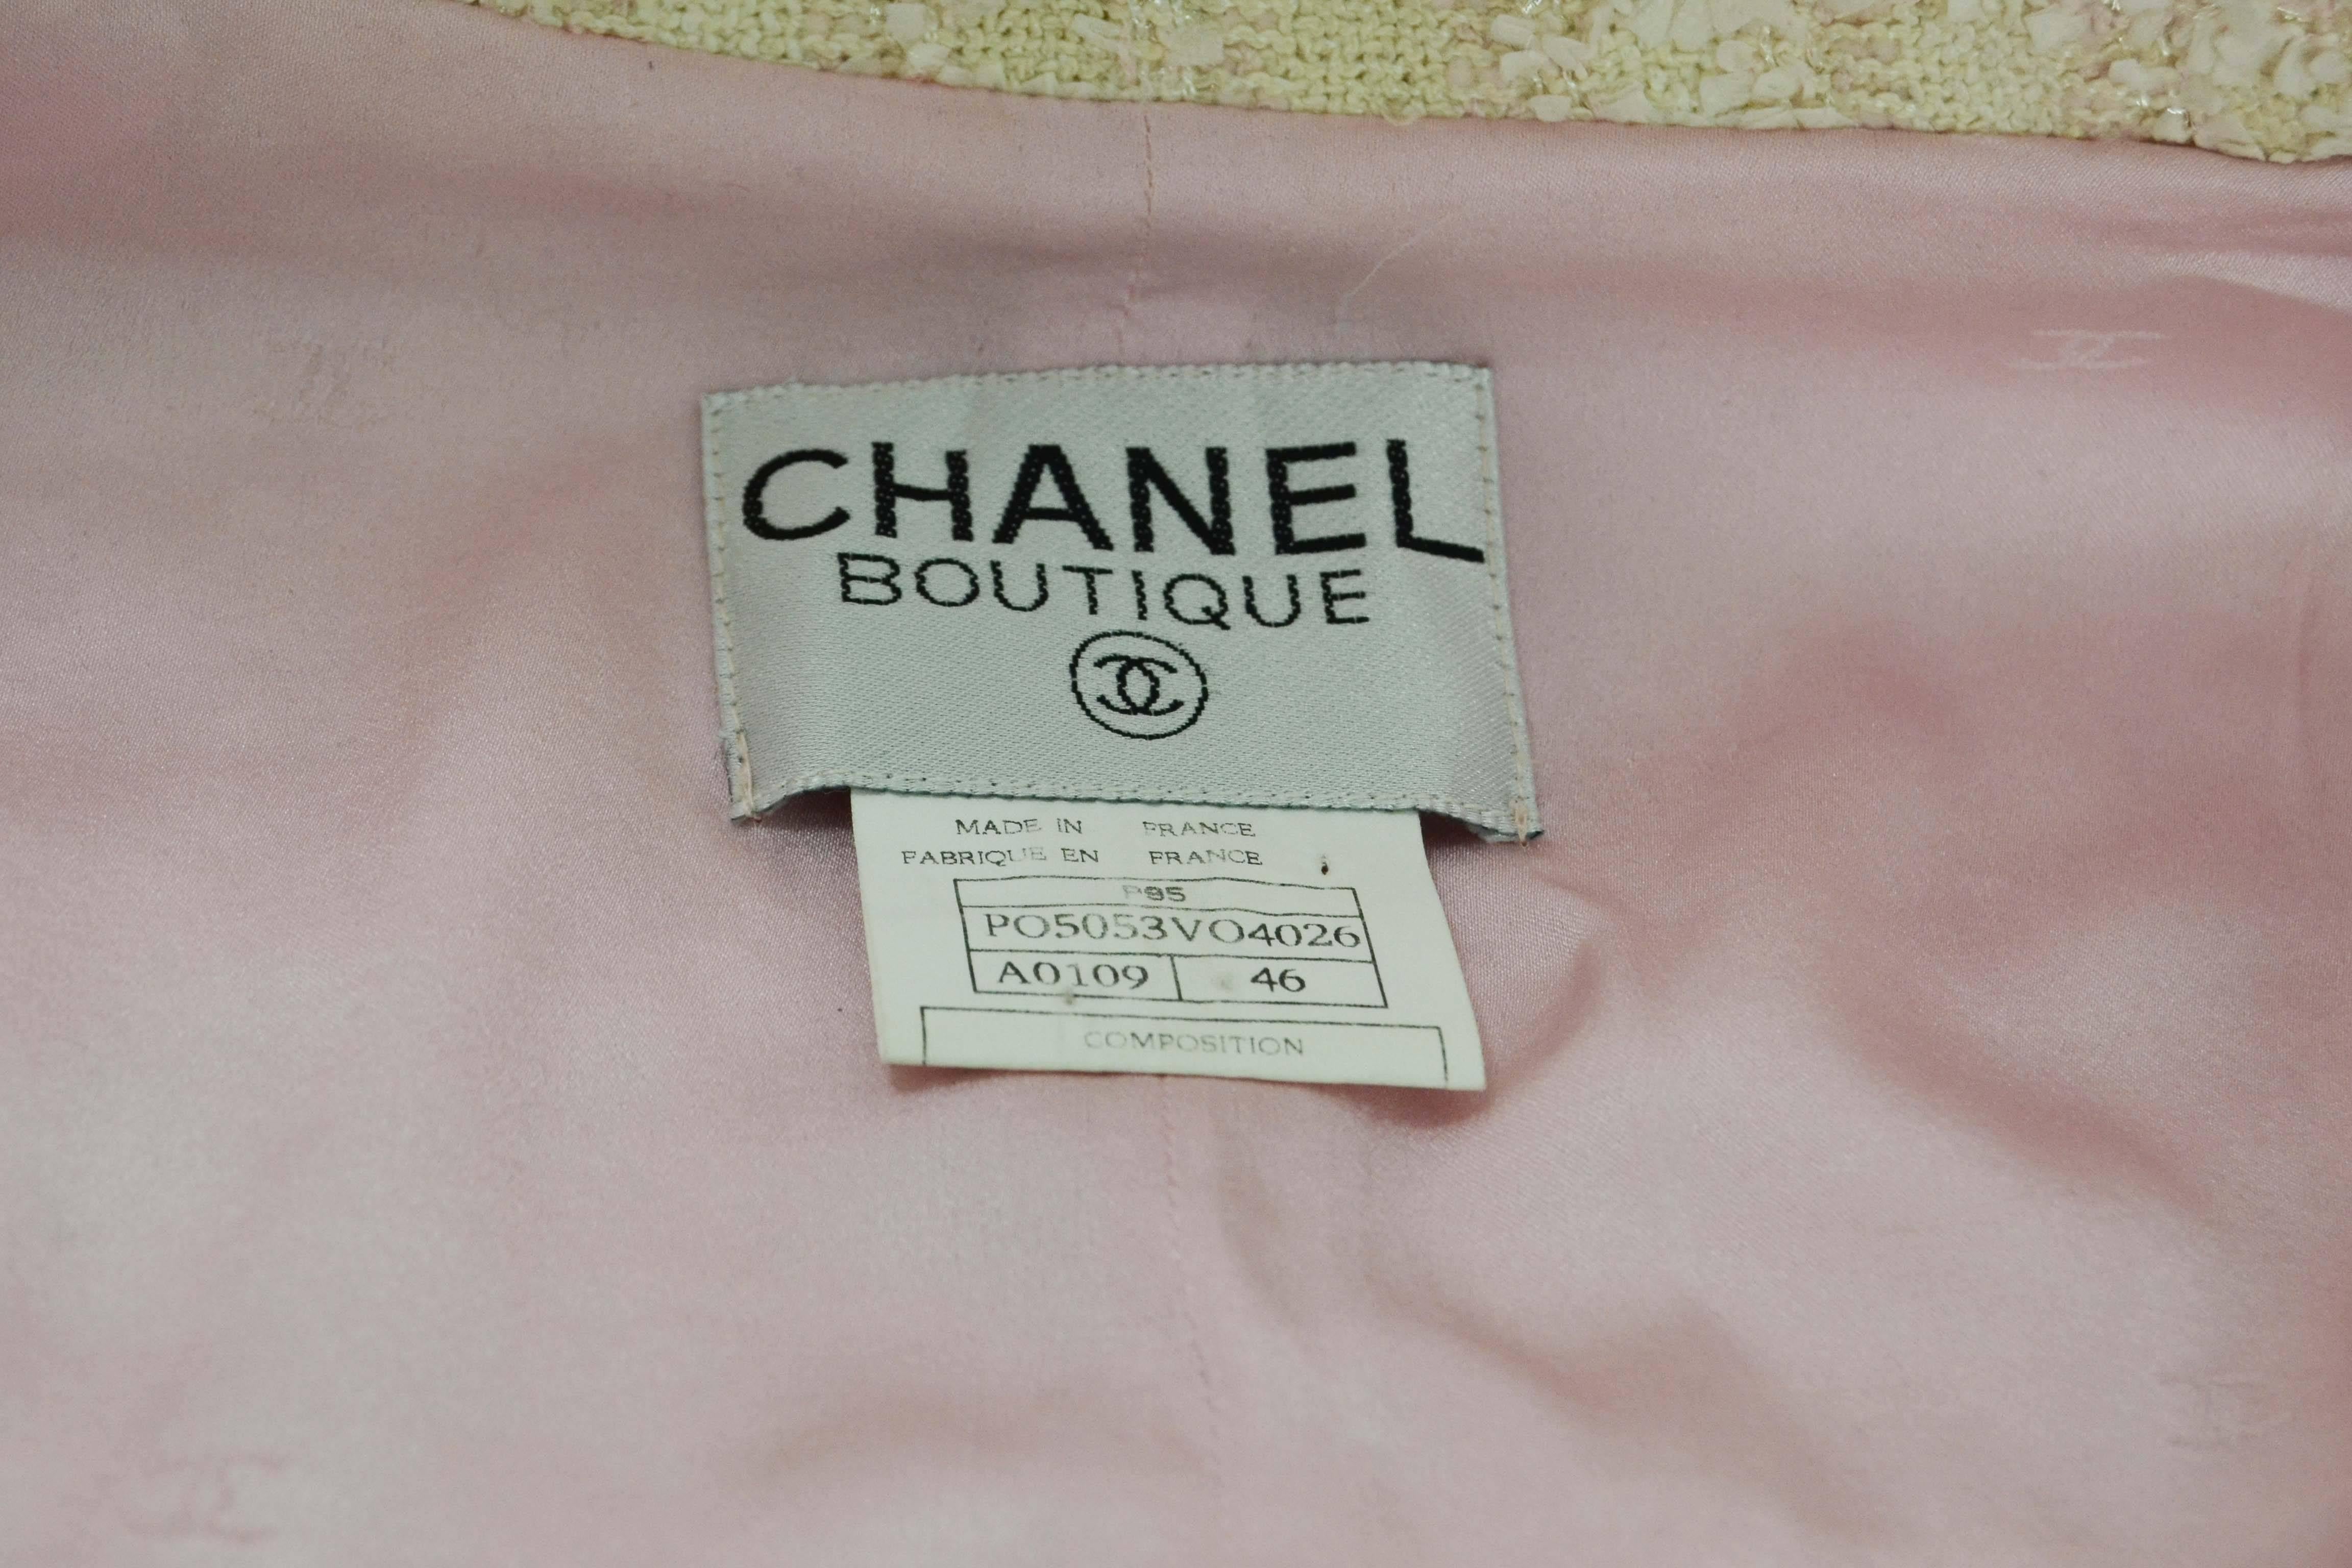 Chanel Claudia Schiffer Vintage '95 Beige & Pink Tweed Skirt Suit sz 46 1